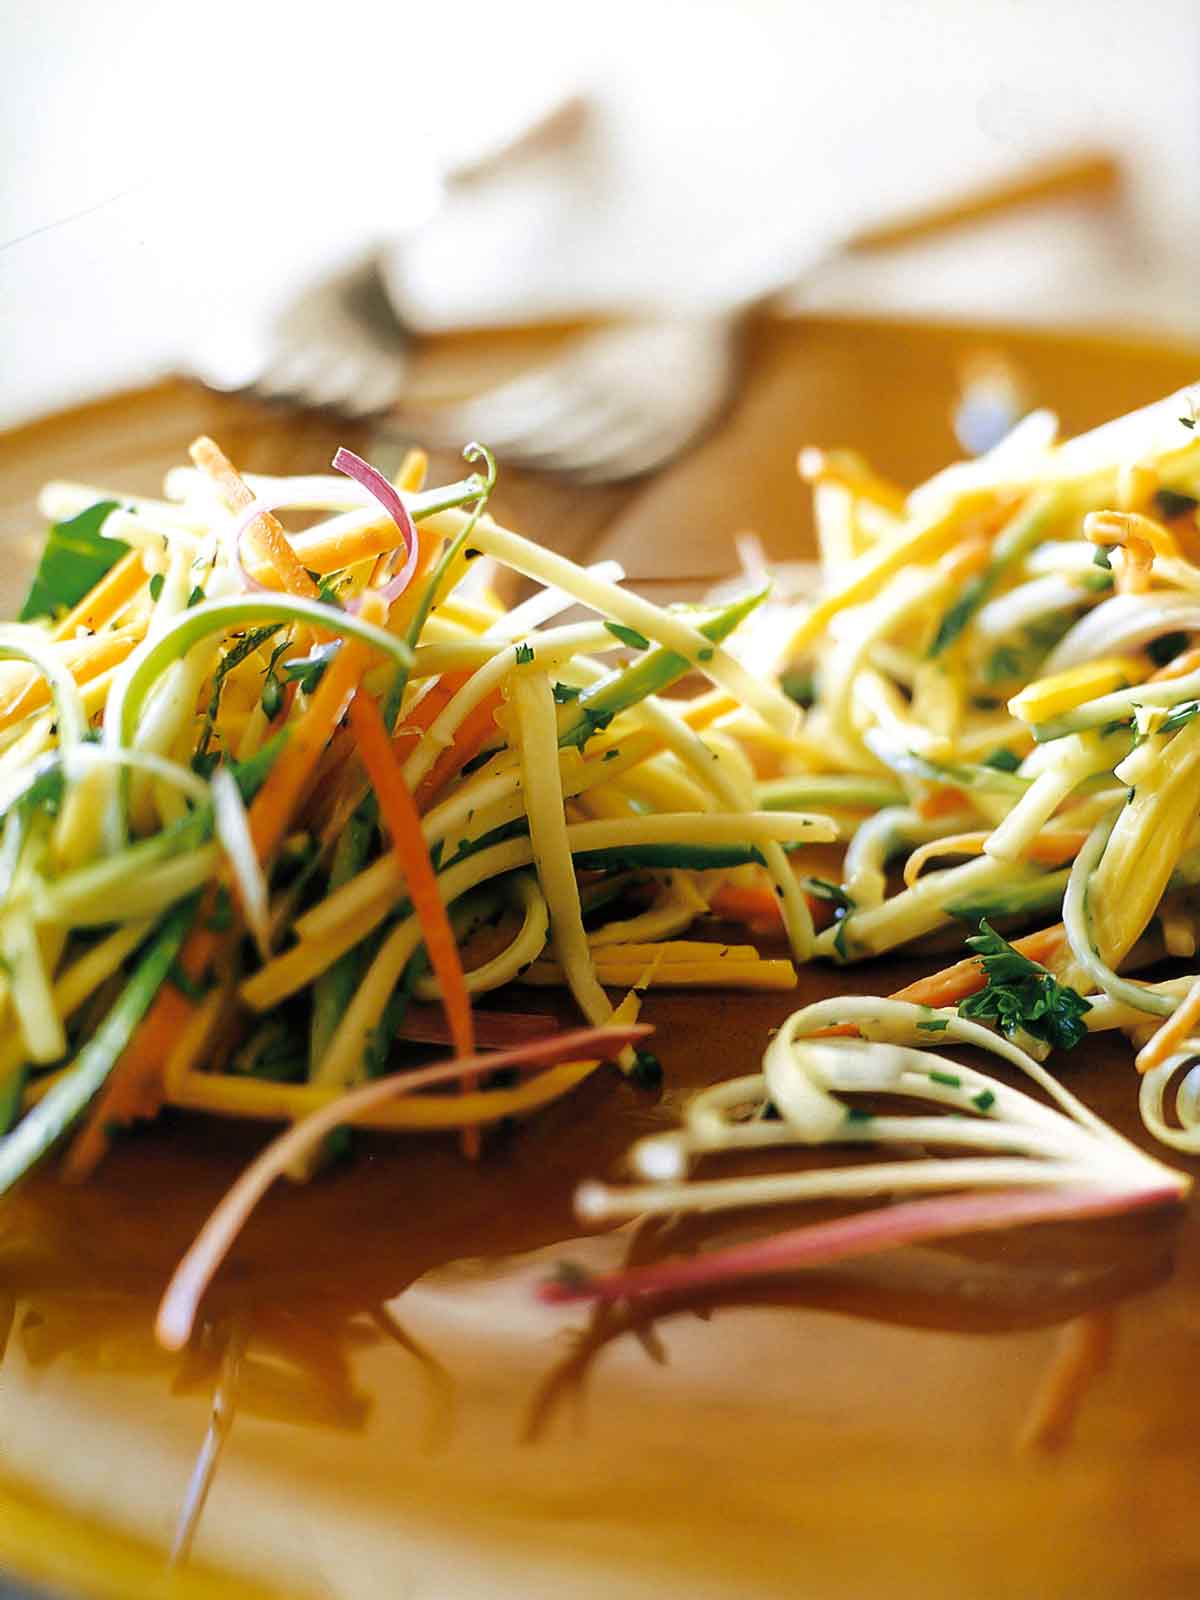 Närbild av en hög med zucchinislaw med morötter, squash och paprika, beströdd med persilja.  2 gafflar i bakgrunden.